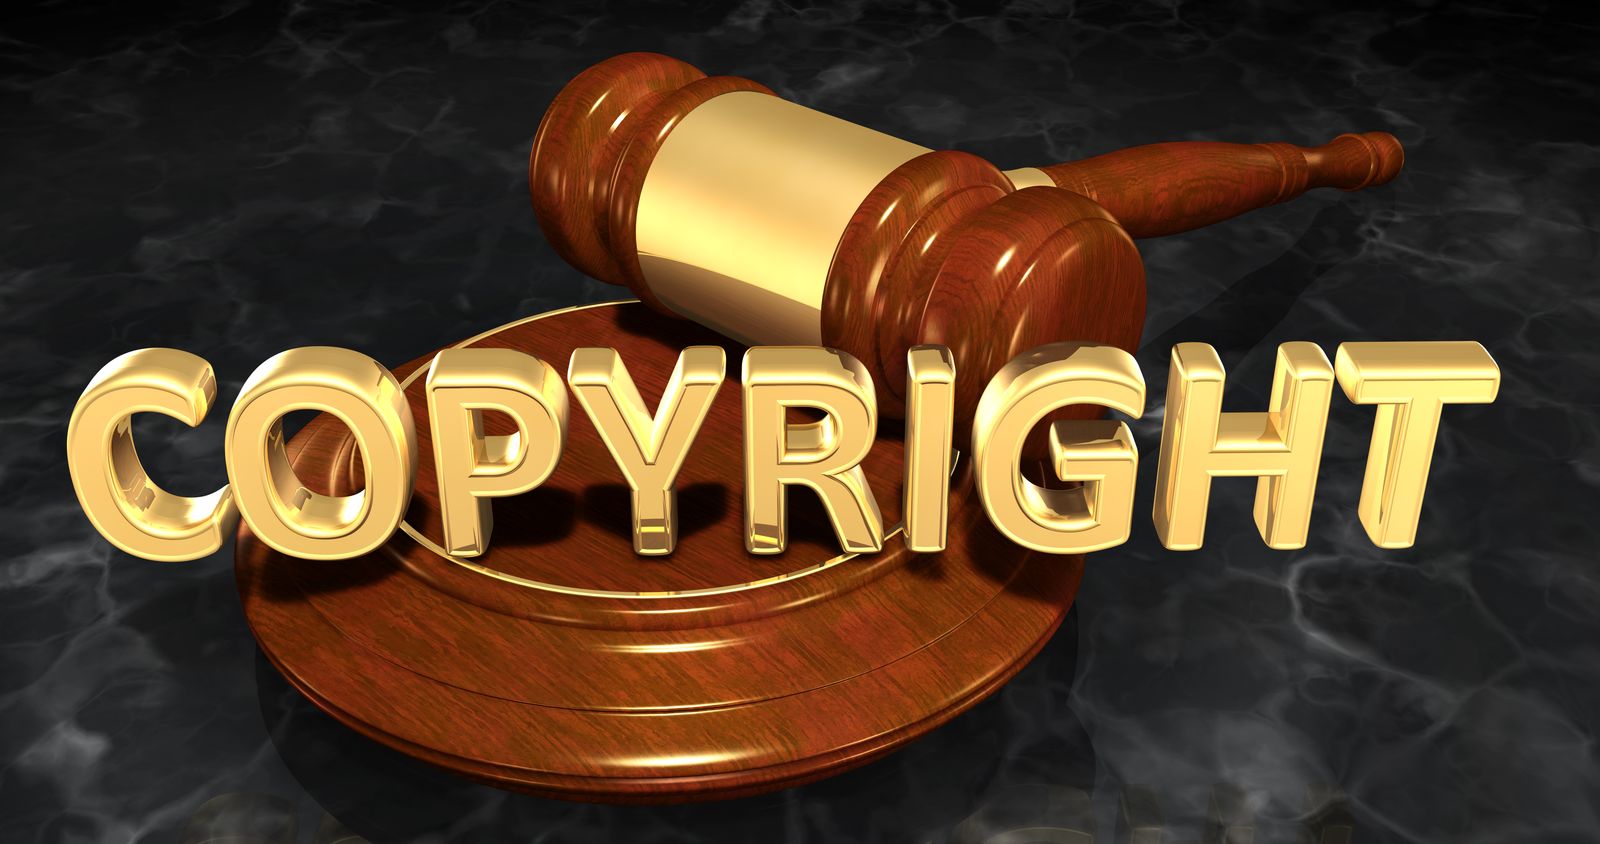 creative work copyright law attorneys gainesville fl